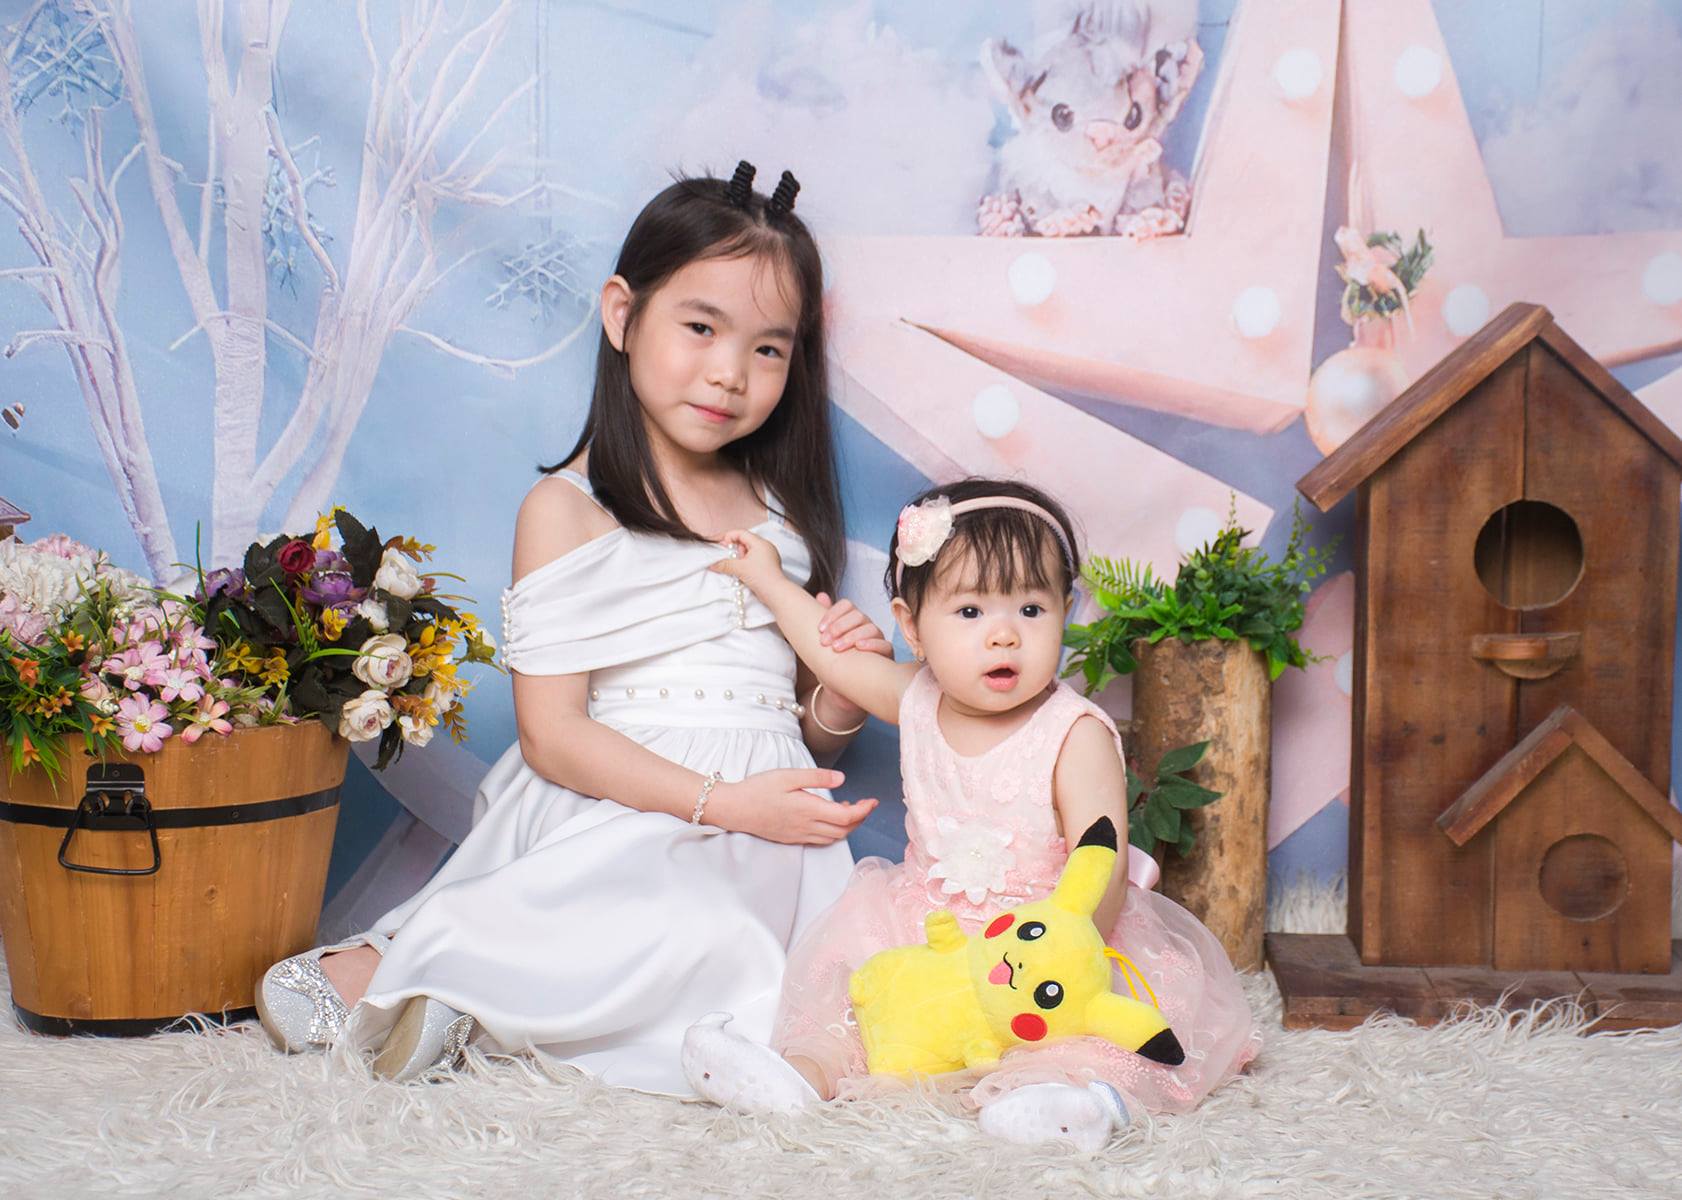 Top 9 studio chụp ảnh cho bé đẹp và chất lượng nhất Biên Hòa, Đồng Nai - Nhím Studio